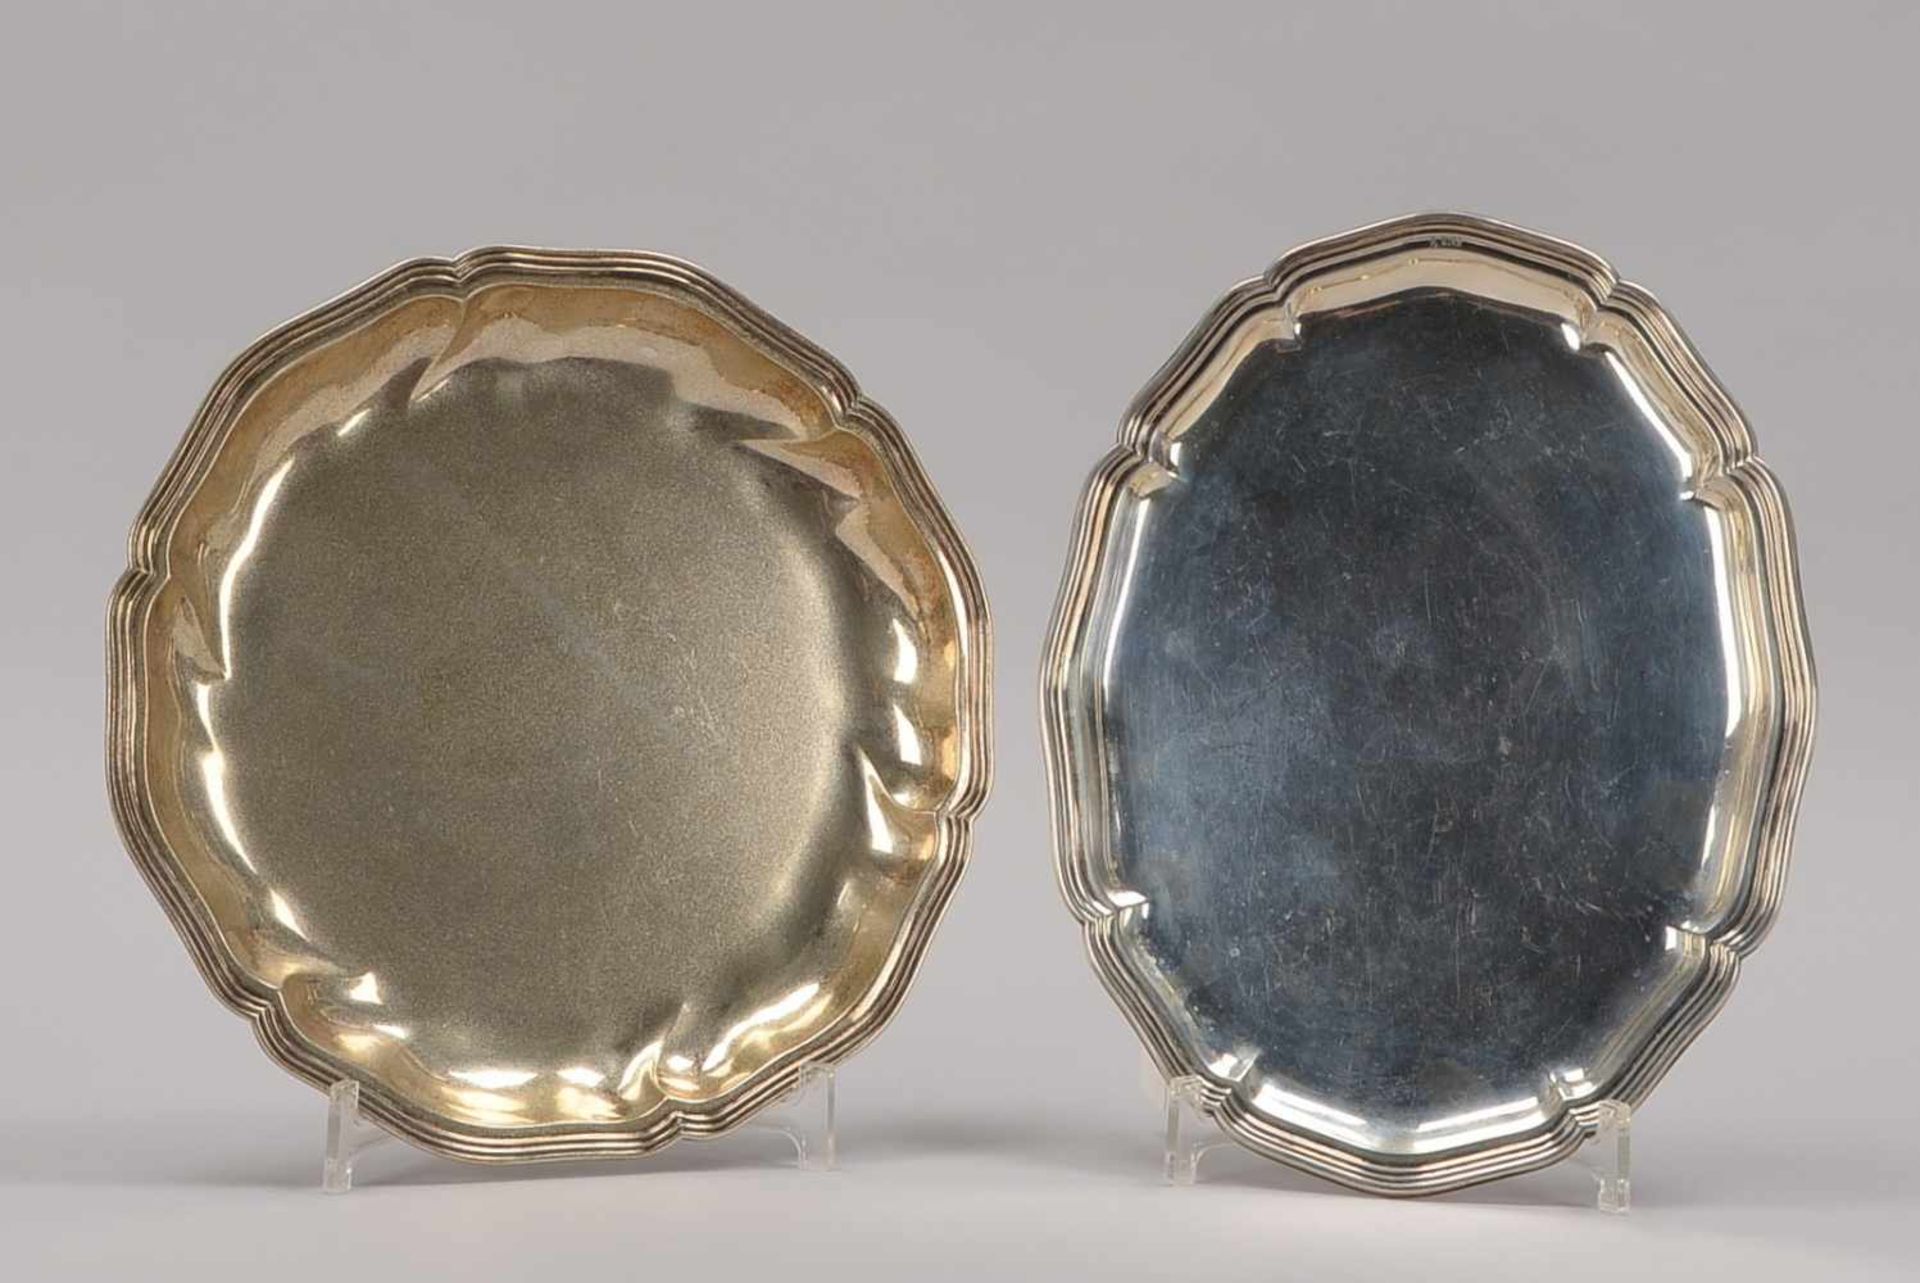 2 Silberteile, unterschiedliche Silbergehalte: Tablett, 830 Silber, Maße 30,5 x 23,5 cm; und Schale,